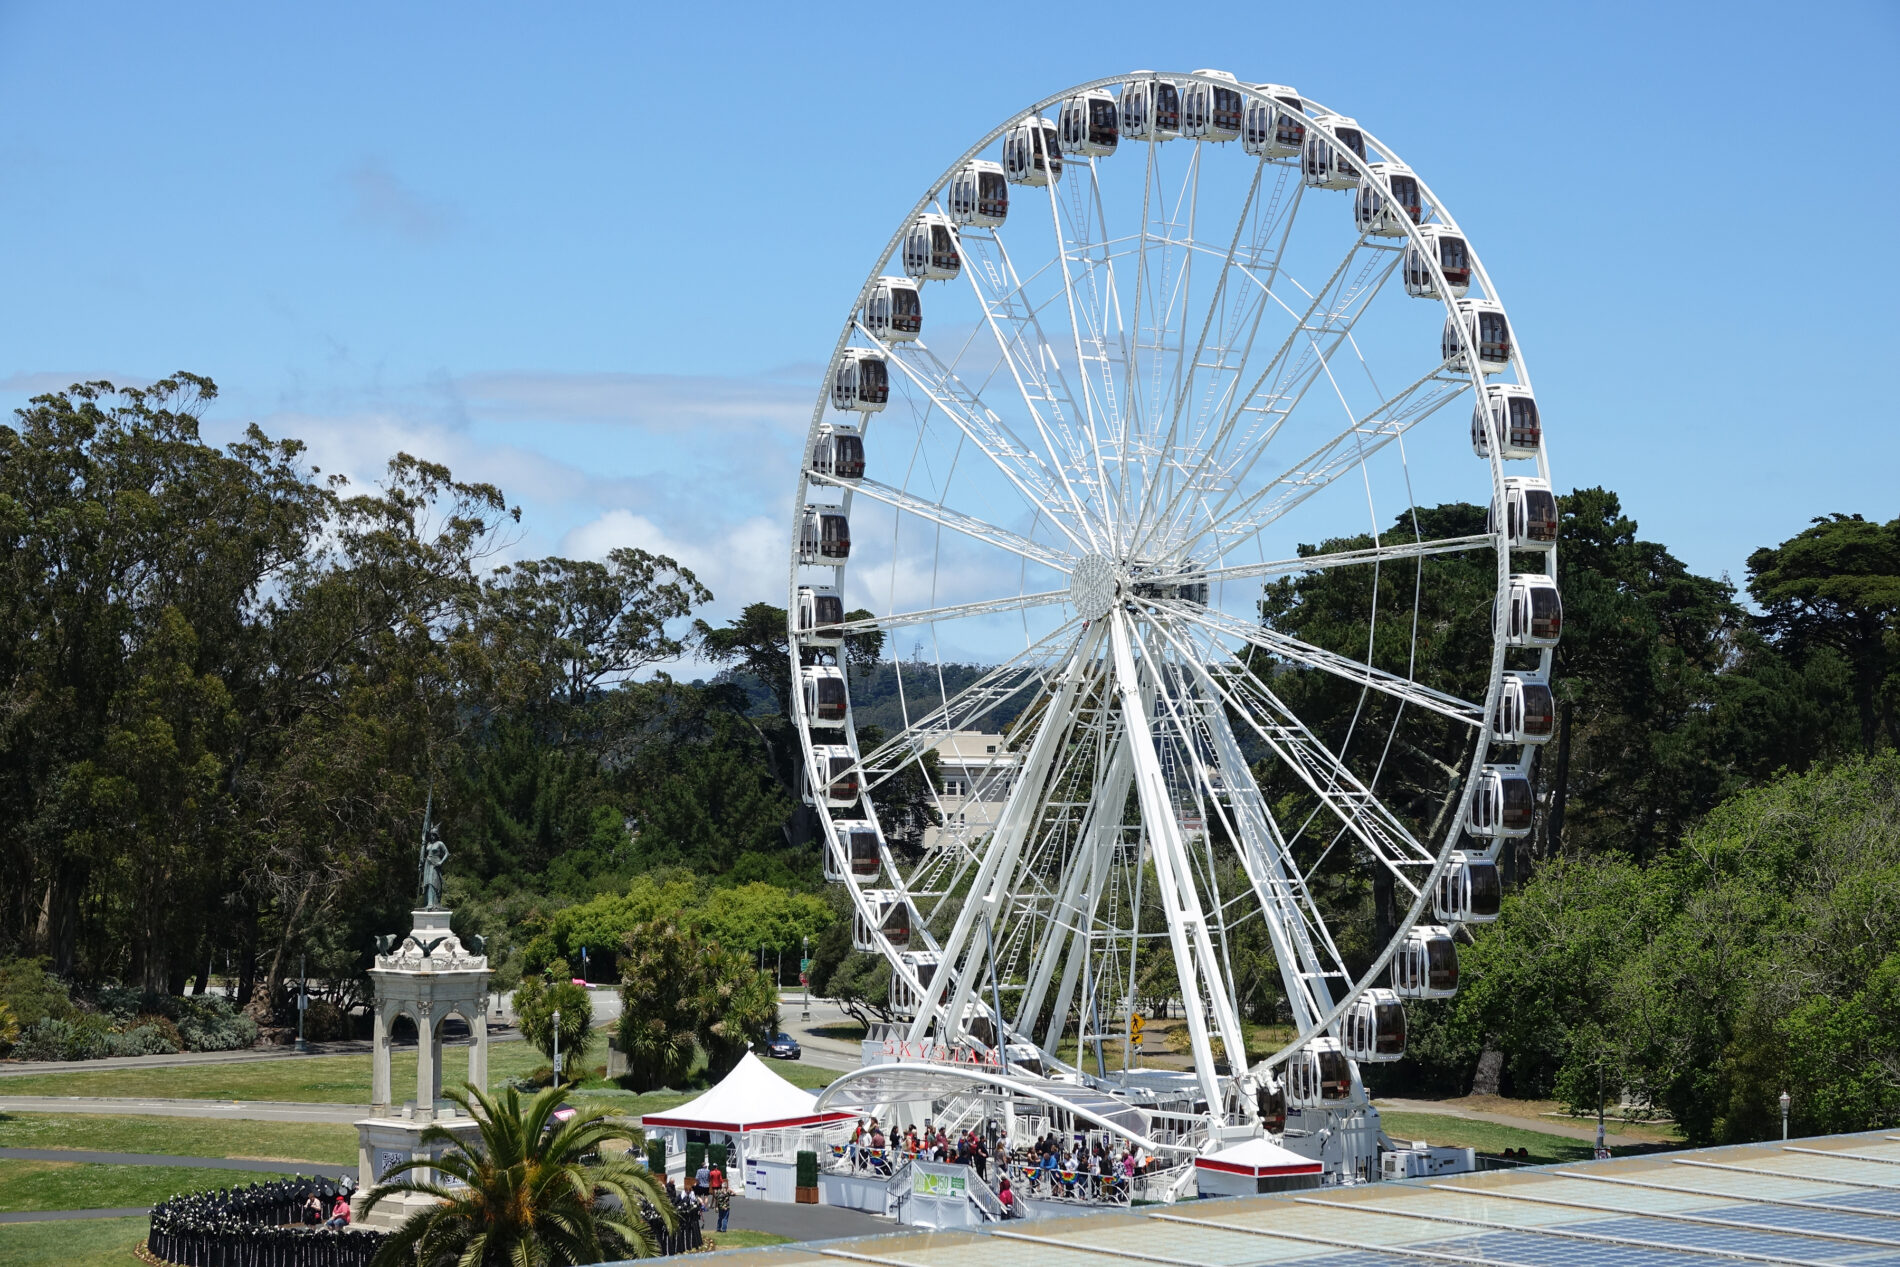 SkyStar Observation Wheel. It’s a giant Golden Gate Park Ferris wheel.